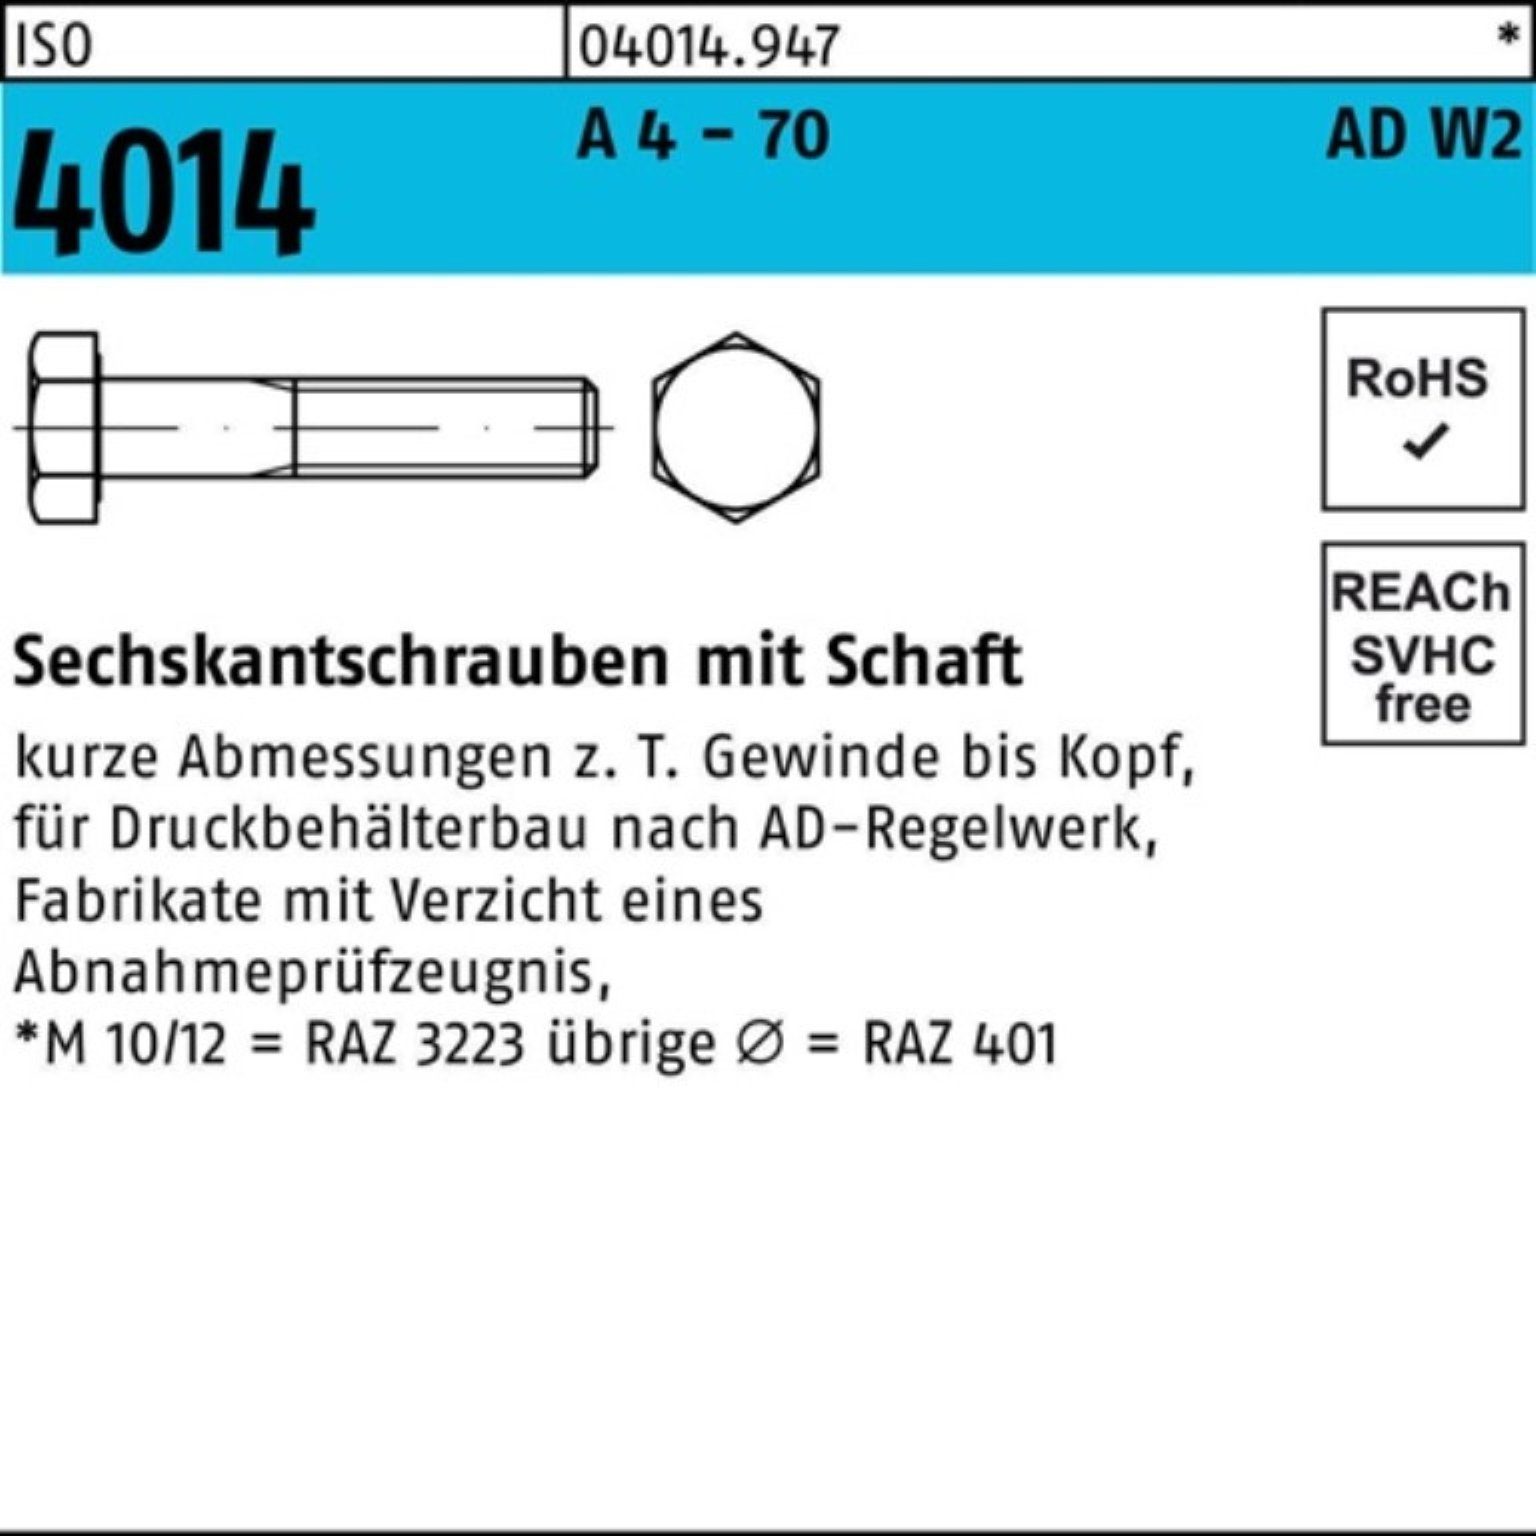 Bufab Sechskantschraube 100er Pack Sechskantschraube ISO 4014 Schaft M10x 65 A 4 - 70 AD-W2 10